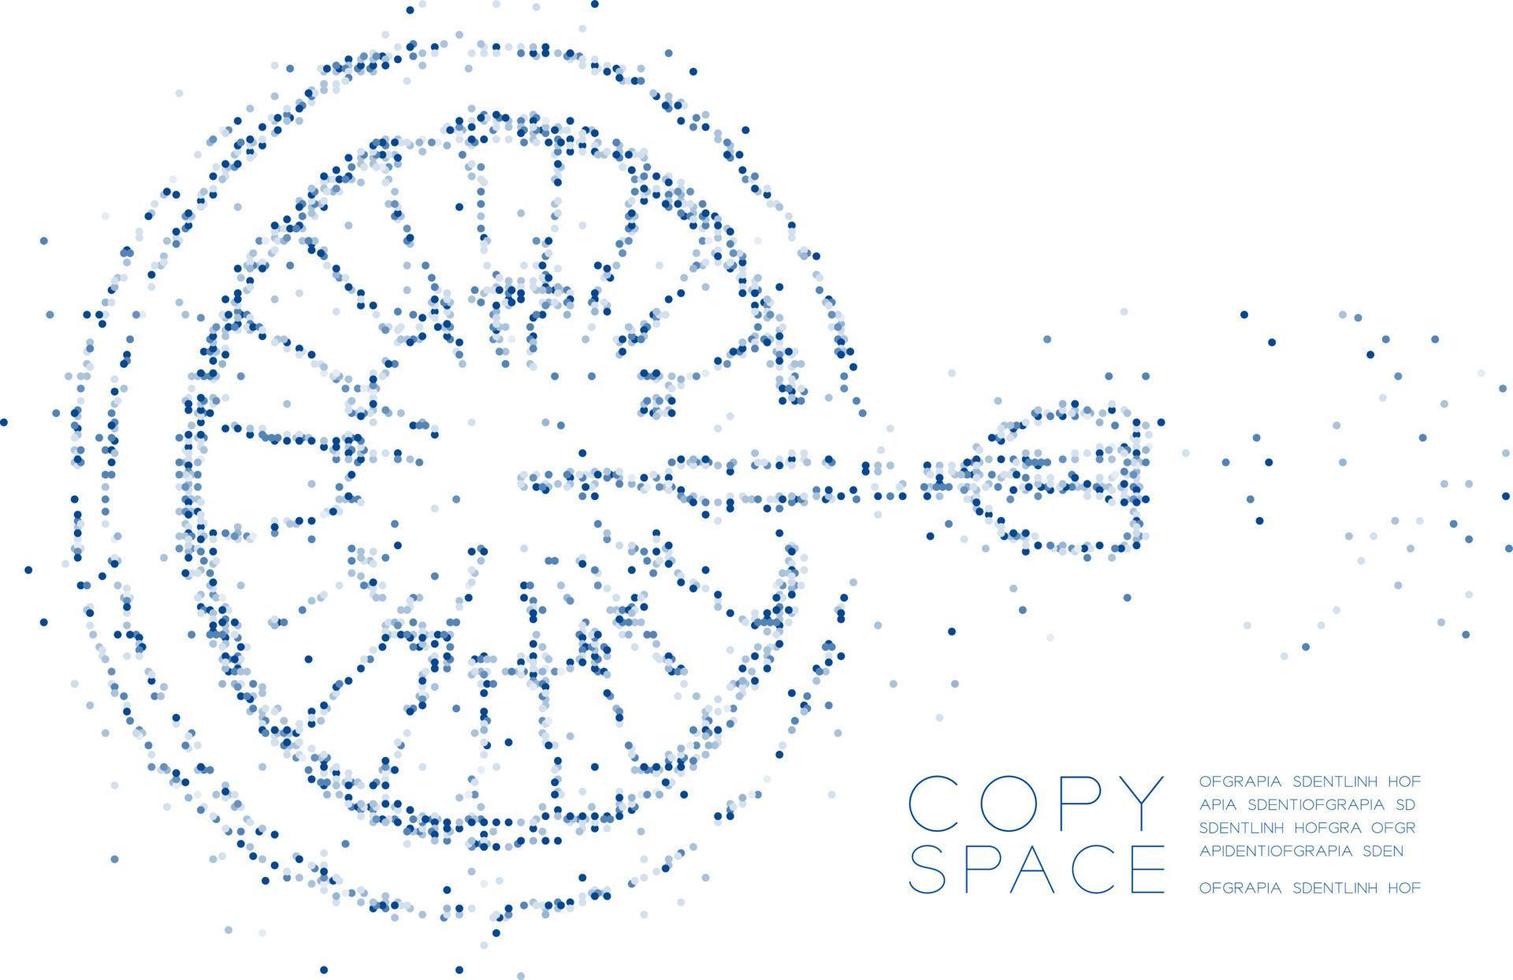 cercle géométrique abstrait forme de jeu de fléchettes de particules de molécule de point, technologie vr stratégie d'entreprise cible concept design illustration de couleur bleue isolée sur fond blanc avec espace de copie vecteur